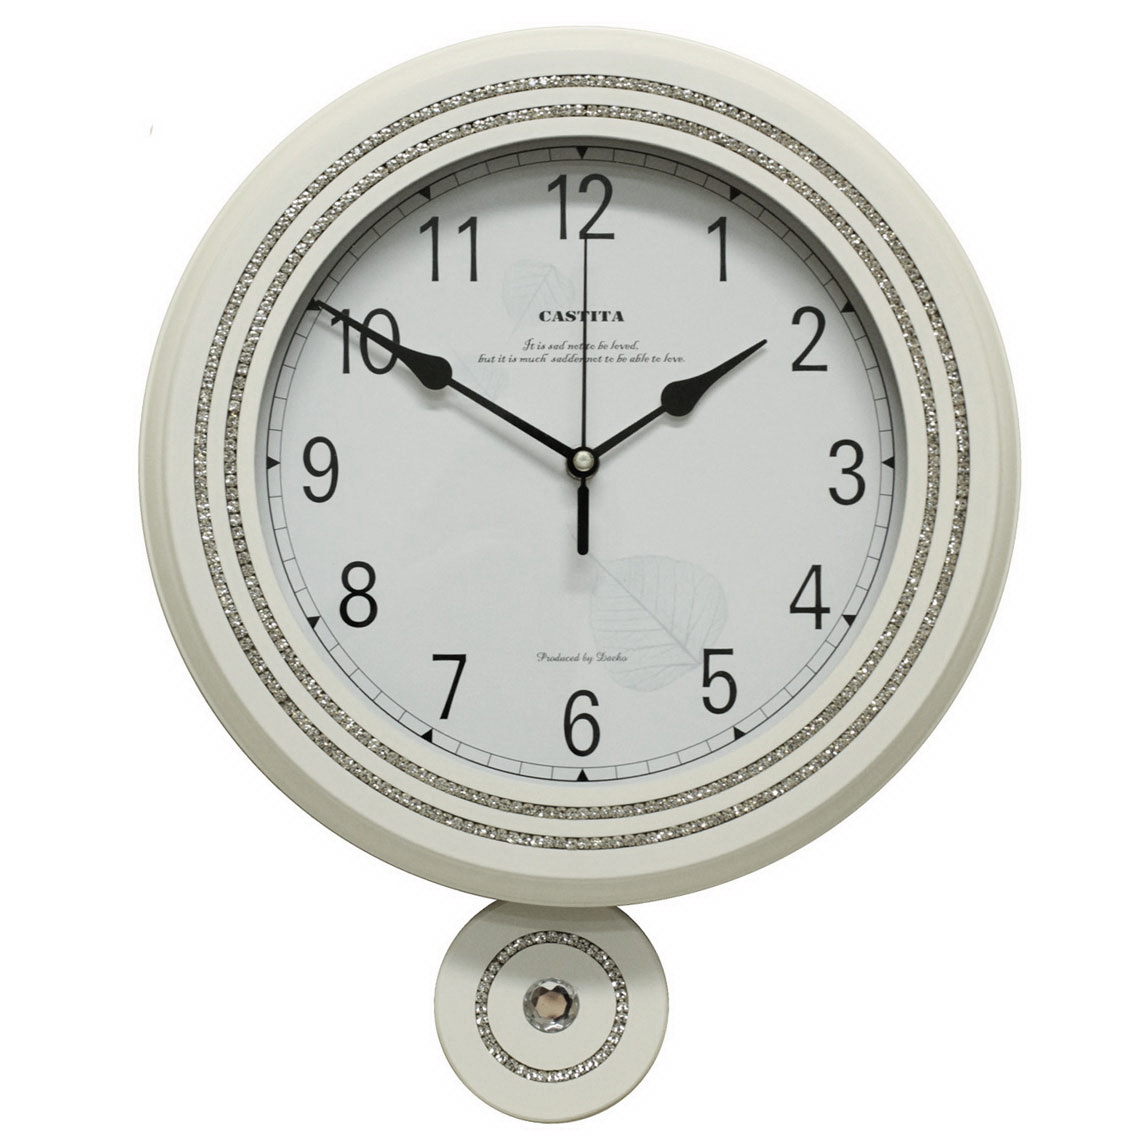 Фото часов Часы настенные Castita 117W            (Код: 117W)